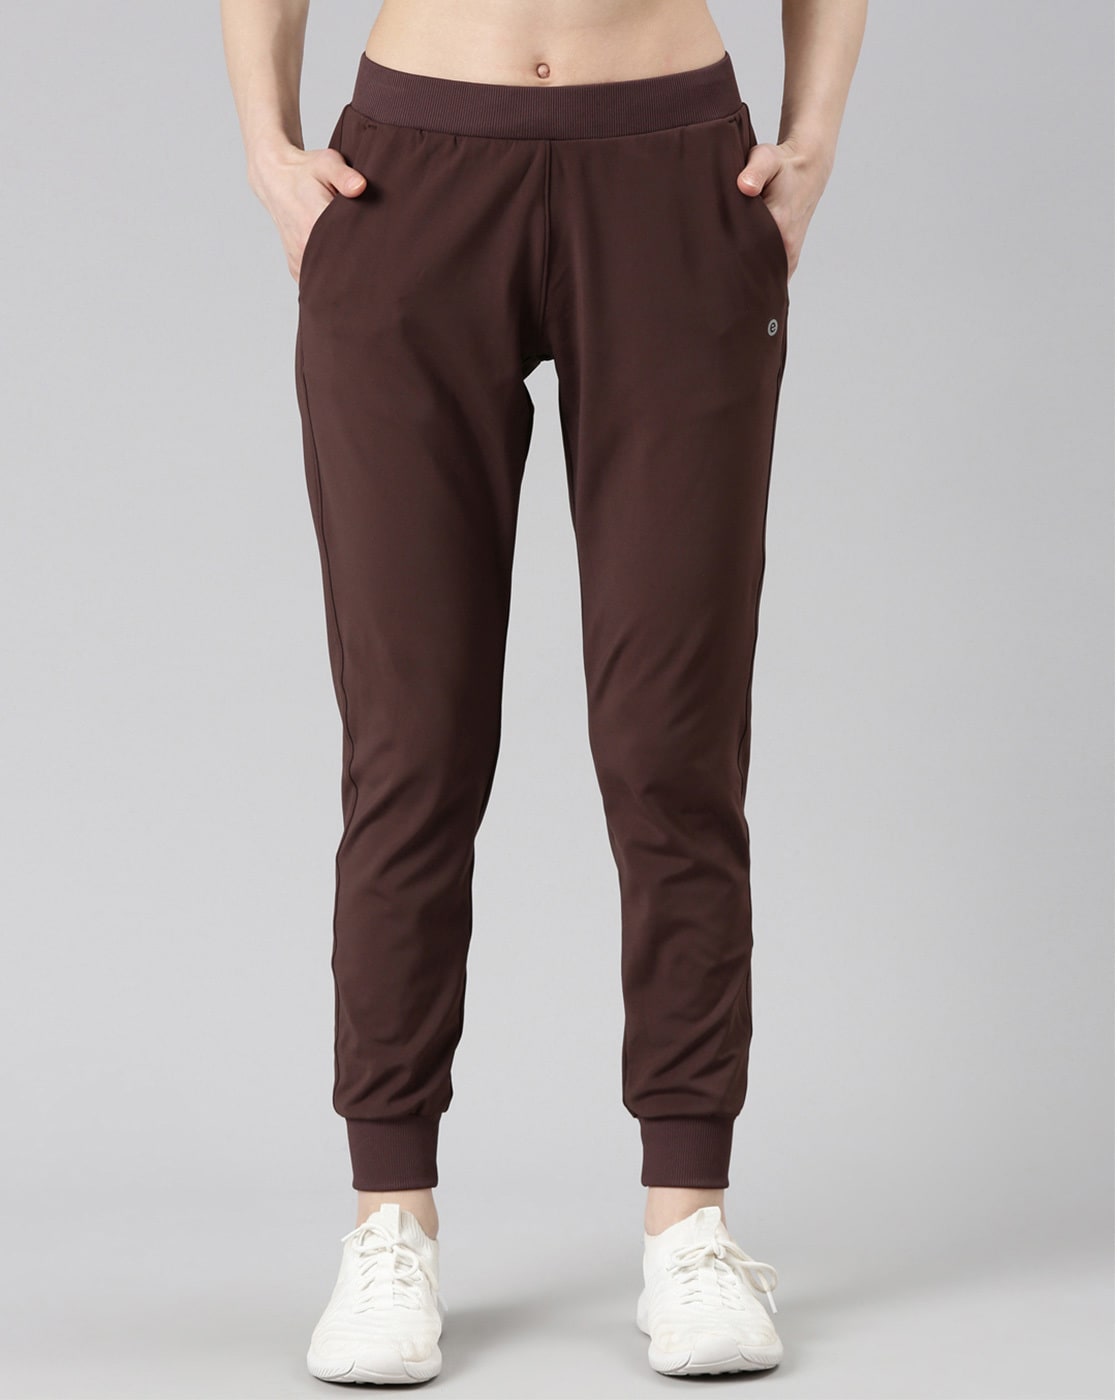 Buy Enamor Women's Lounge Pants Slim fit at Amazon.in